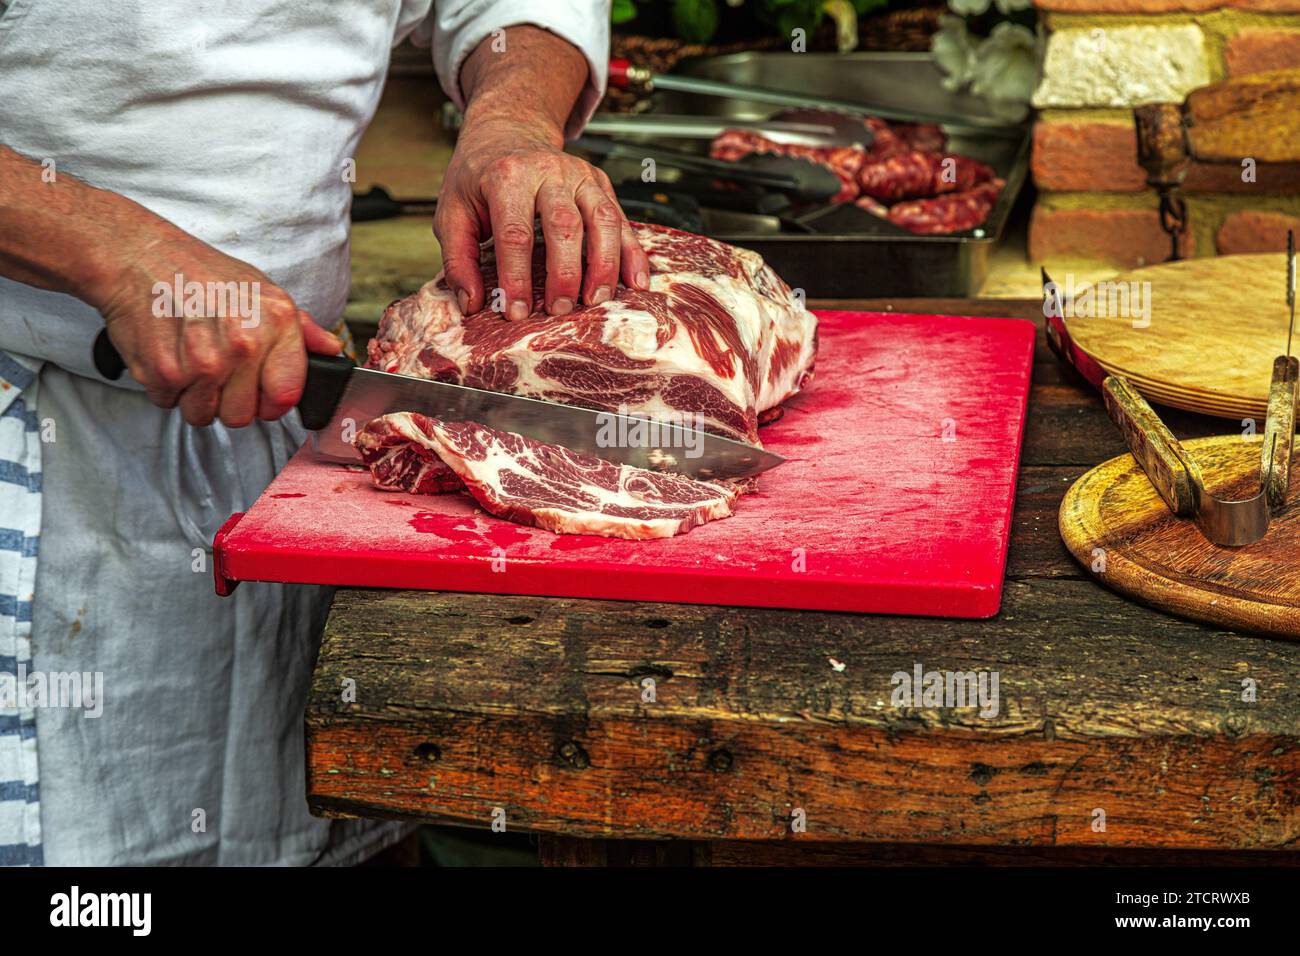 Dans une cuisine extérieure, un chef prépare de la viande pour faire des rôtis grillés au barbecue. Abruzzes, Italie. Europe Banque D'Images